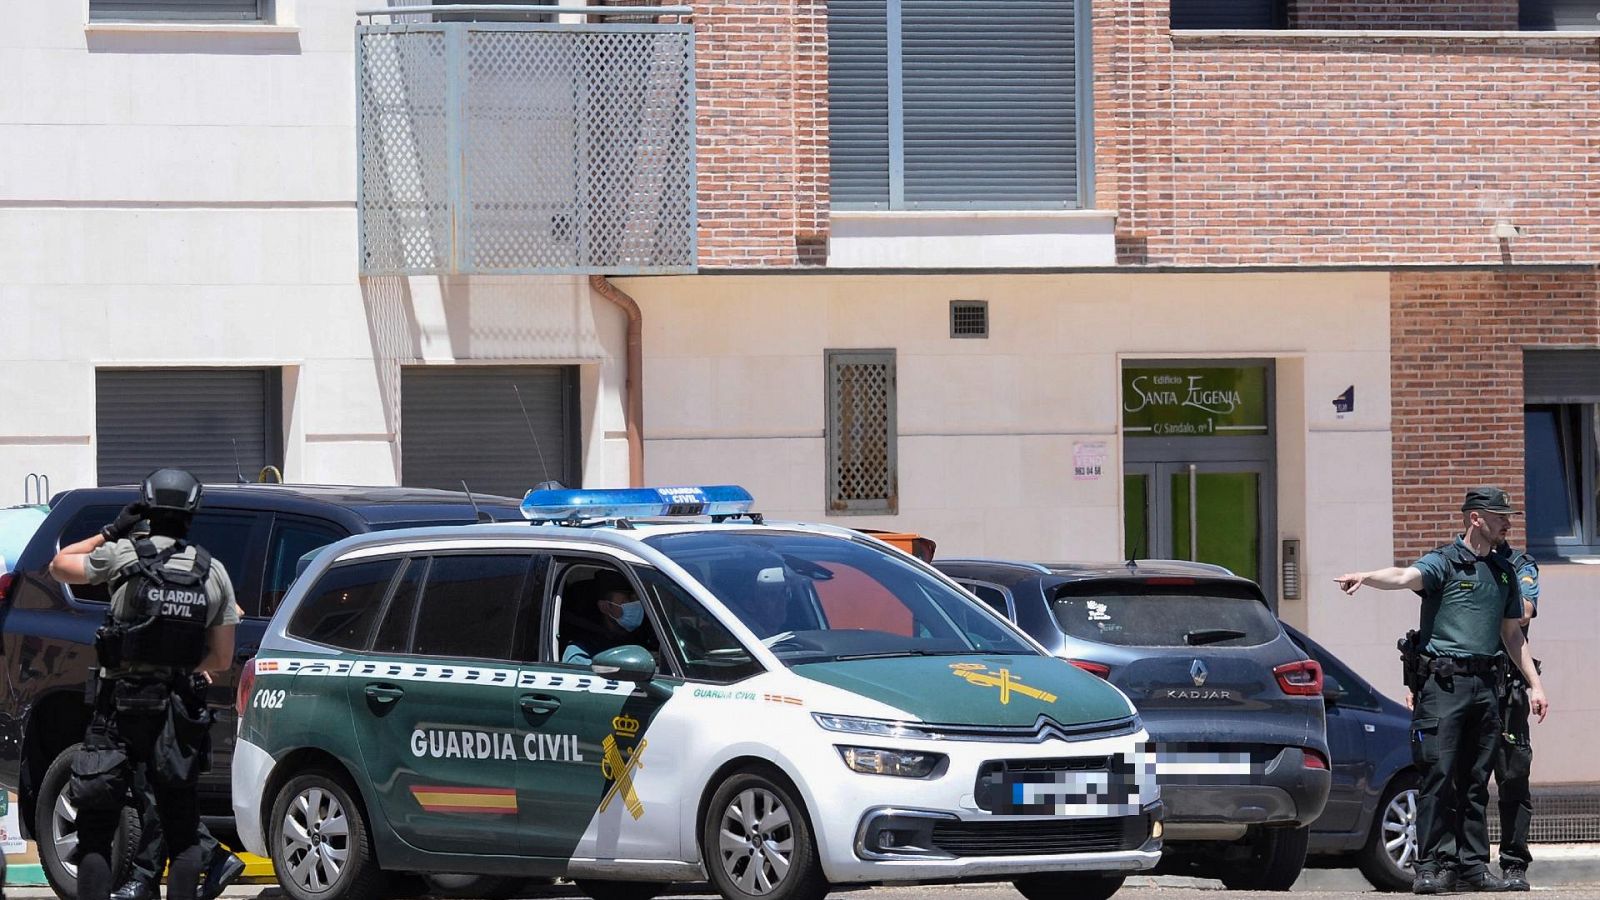 Se entrega el hombre que mató a su vecino en Valladolid